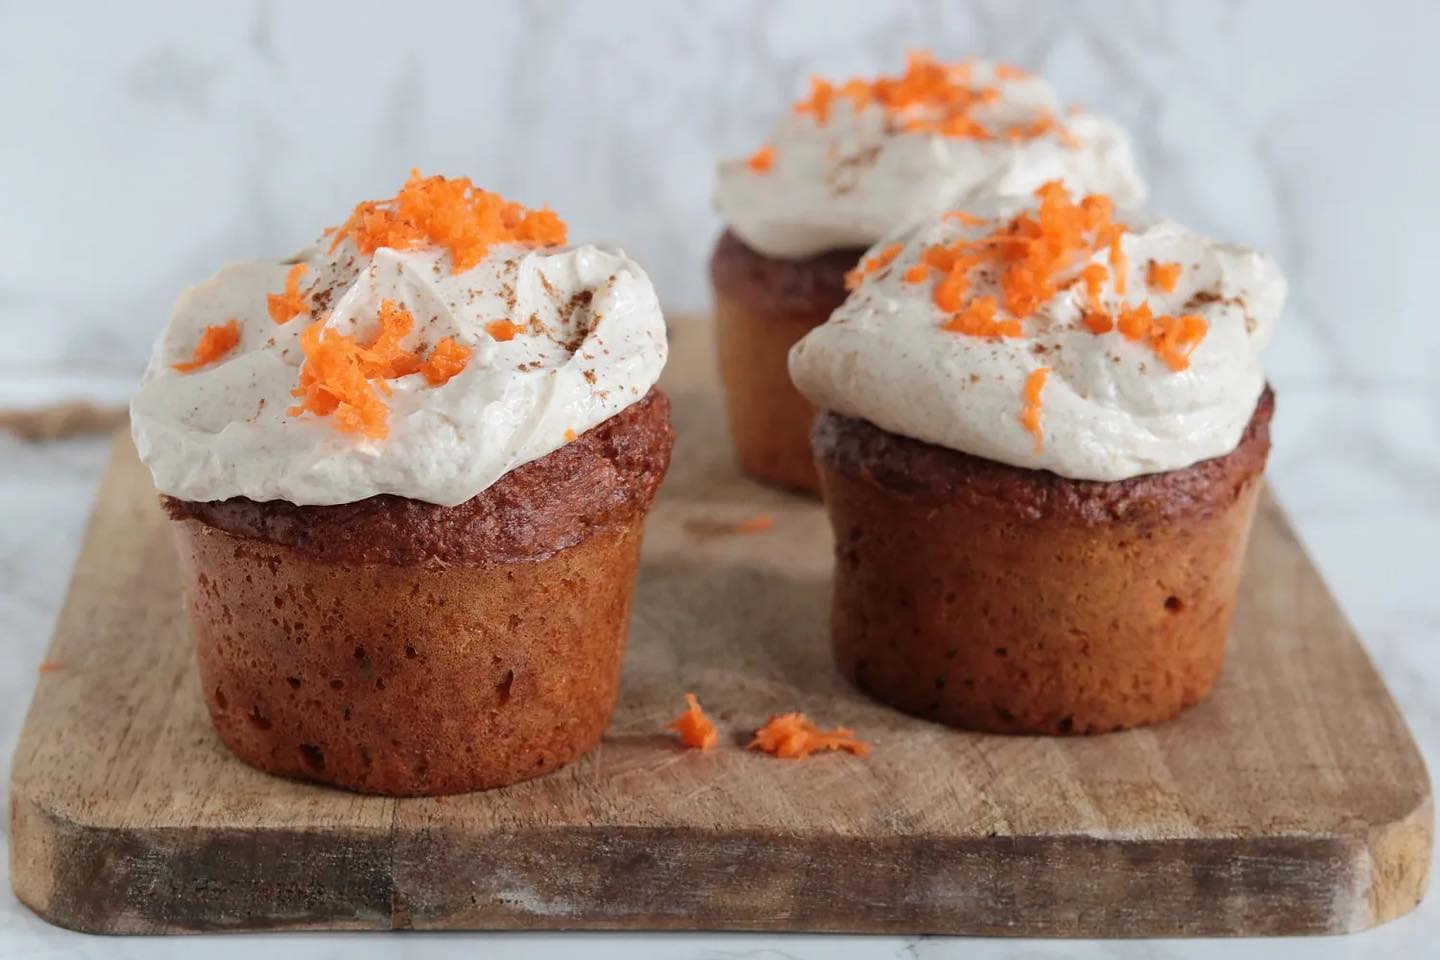 Deze carrot cupcakes zijn ook helemaal herfst proof 🍂 Ik voeg soms ook gemberpoeder, een beetje nootmuskaat en kruidnagelpoeder toe voor extra herfst vibes 🥕 Zo lekker als snack met een warm bakje thee of koffie! 🥰

Het recept vind je op mijn website onder de naam: Carrot cupcakes 🥕 

#koolhydraatarm #lowcarb #keto #oanhskitchen #glutenvrij